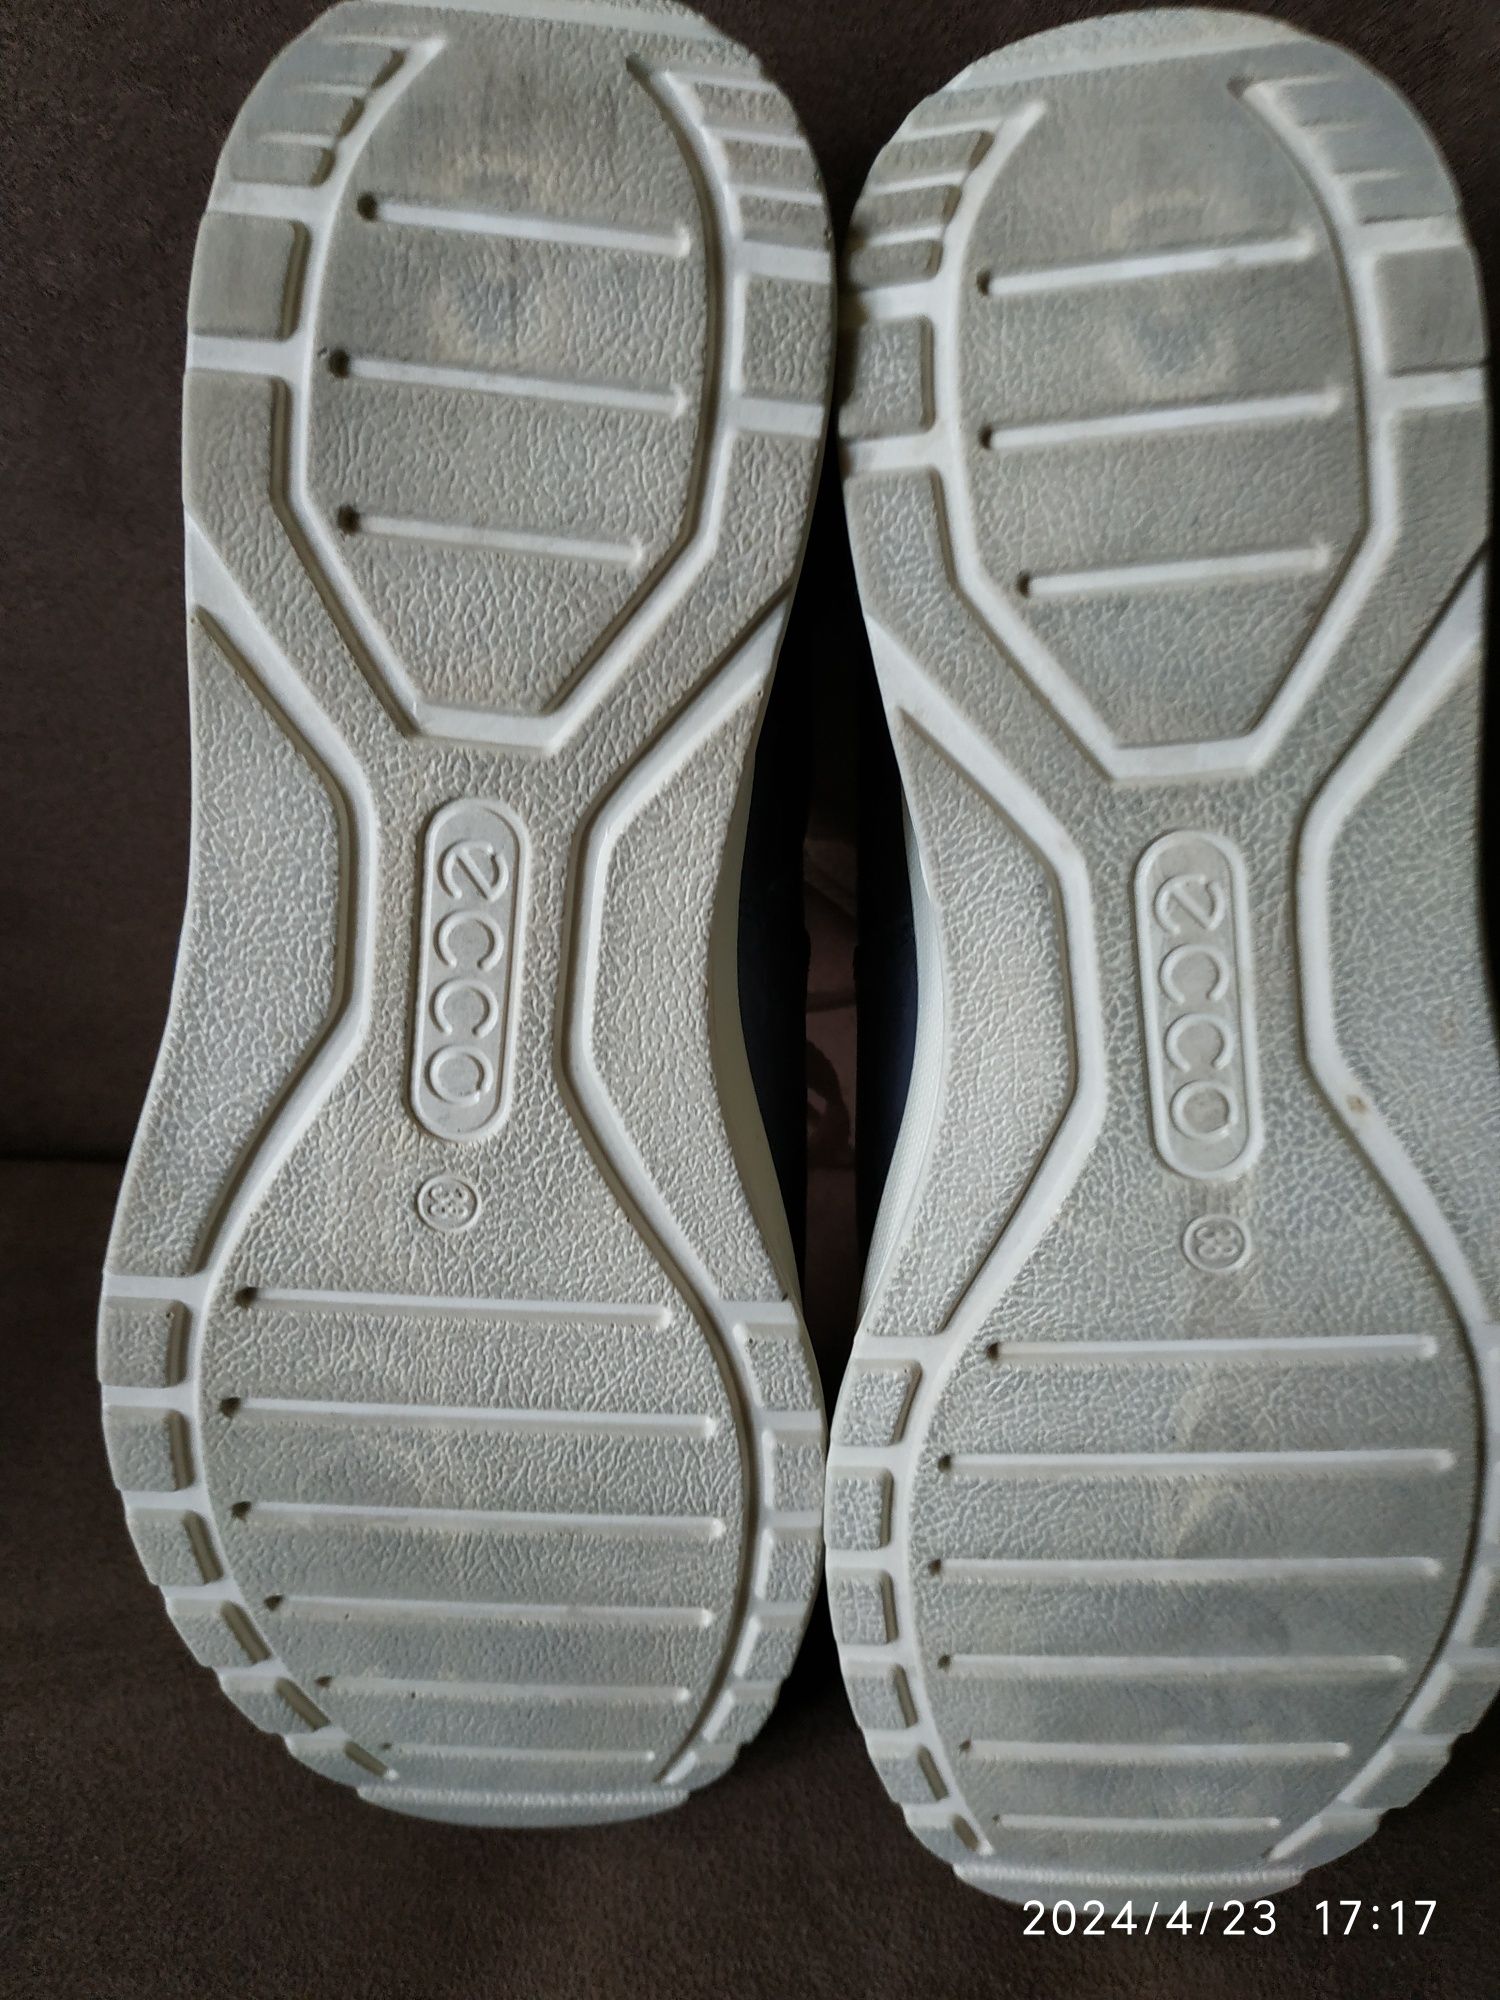 Damskie buty granatowe skórzane Ecco, r 38, używane